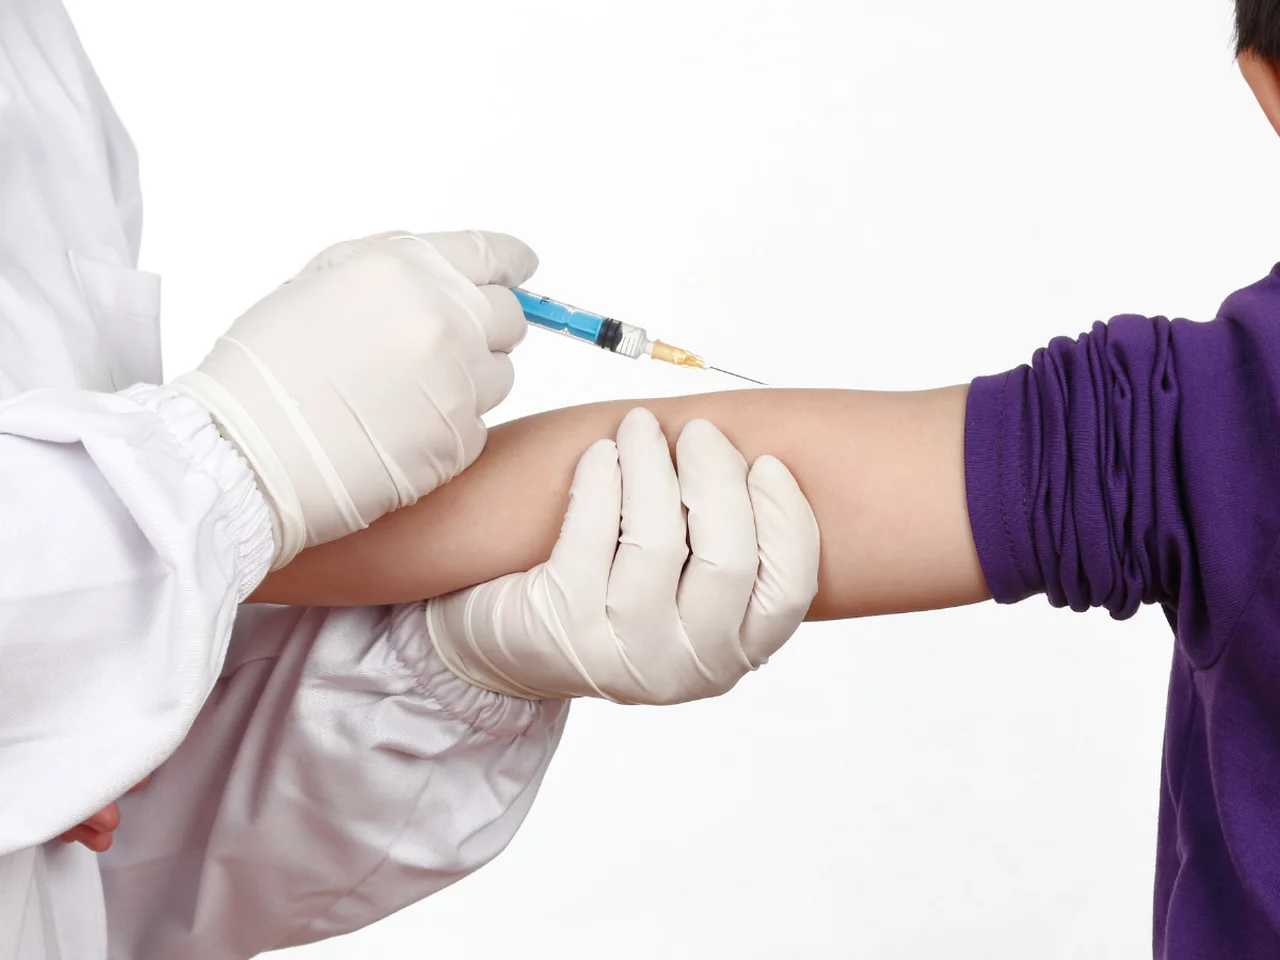 Punkty szczepień w szkołach! Minister Zdrowia podaje termin akcji szczepień wśród uczniów!